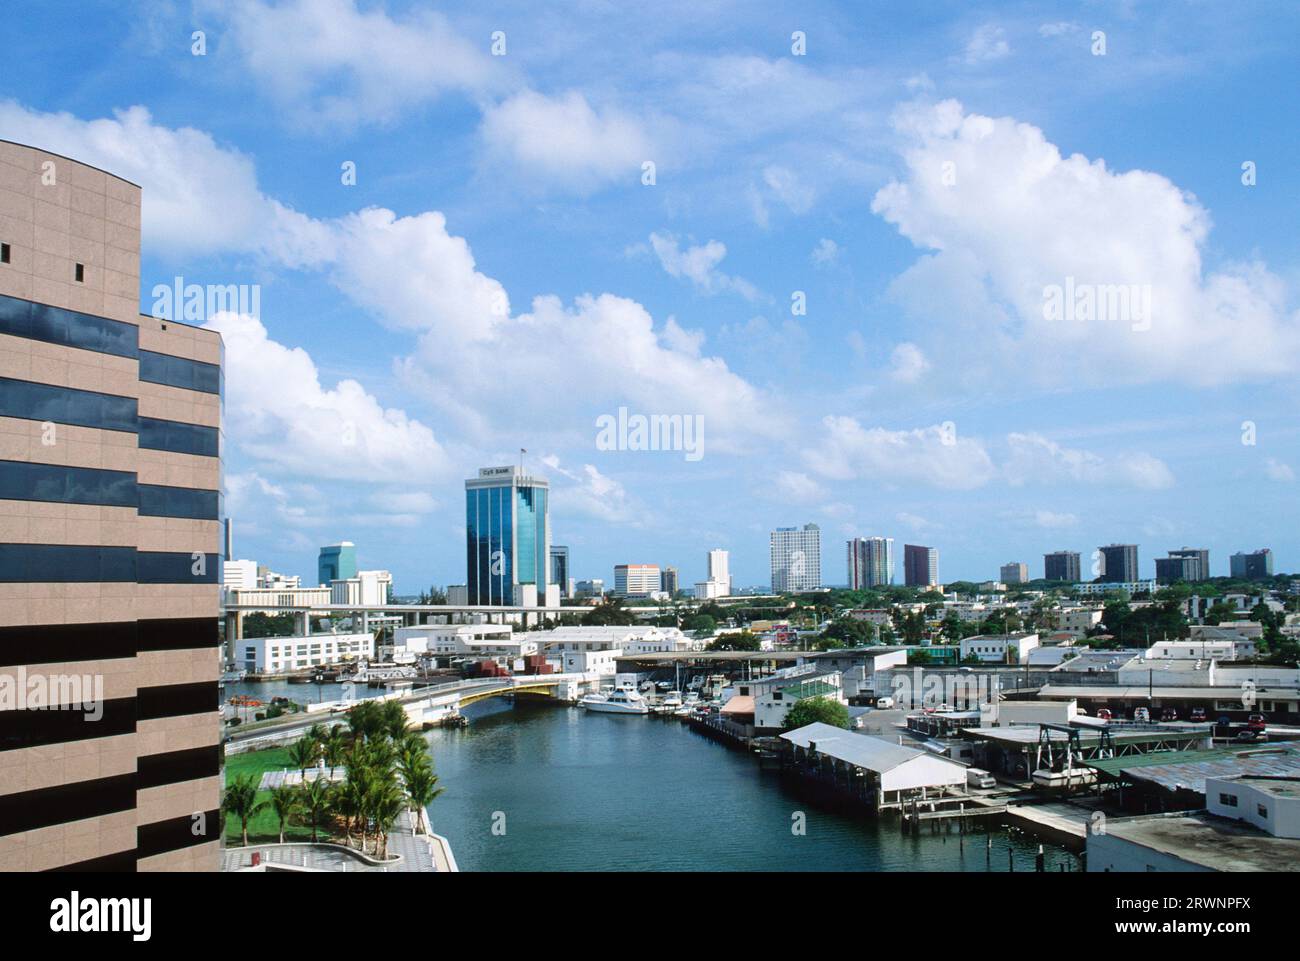 Miami Florida General Douglas MacArthur Causeway Thruway. Downtown Miami waterfront connecting road from Downtown Miami to South Beach. USA Stock Photo